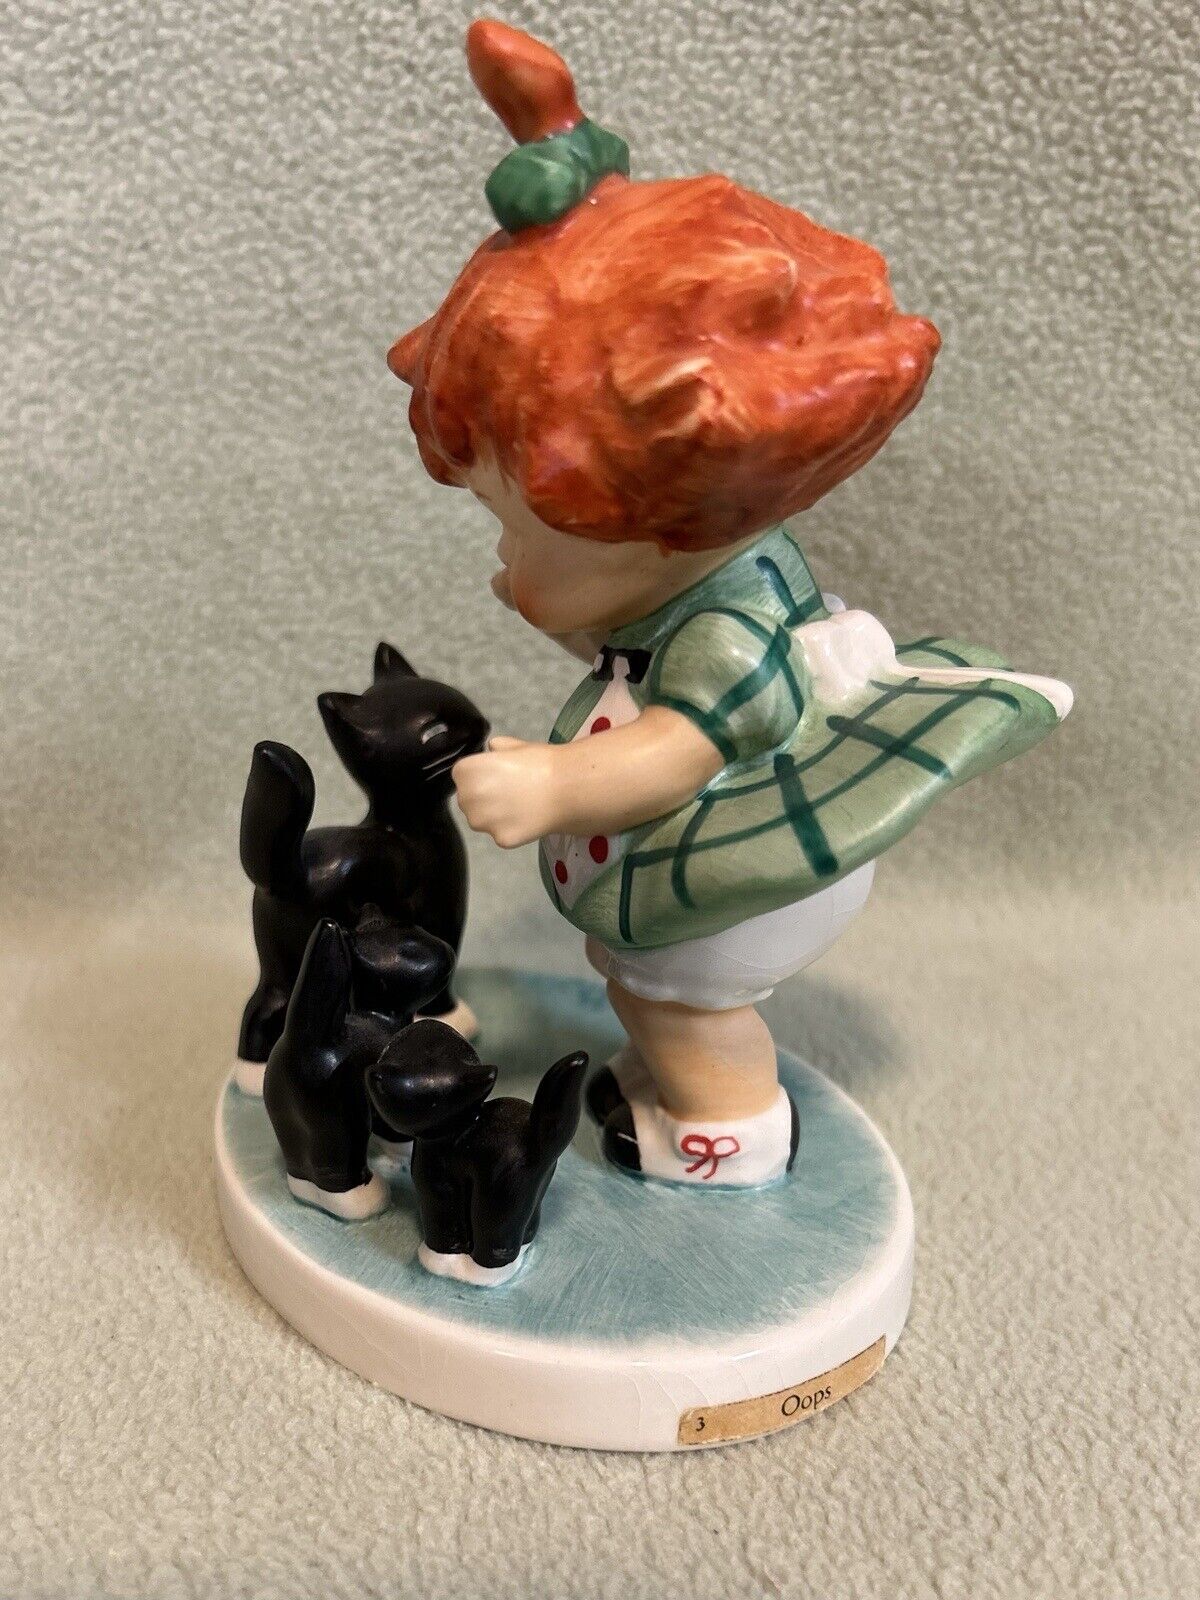 Vintage 1970’s Era TMK-5 Goebel Hummel “Oops” Figurine Girl with Black Kittens